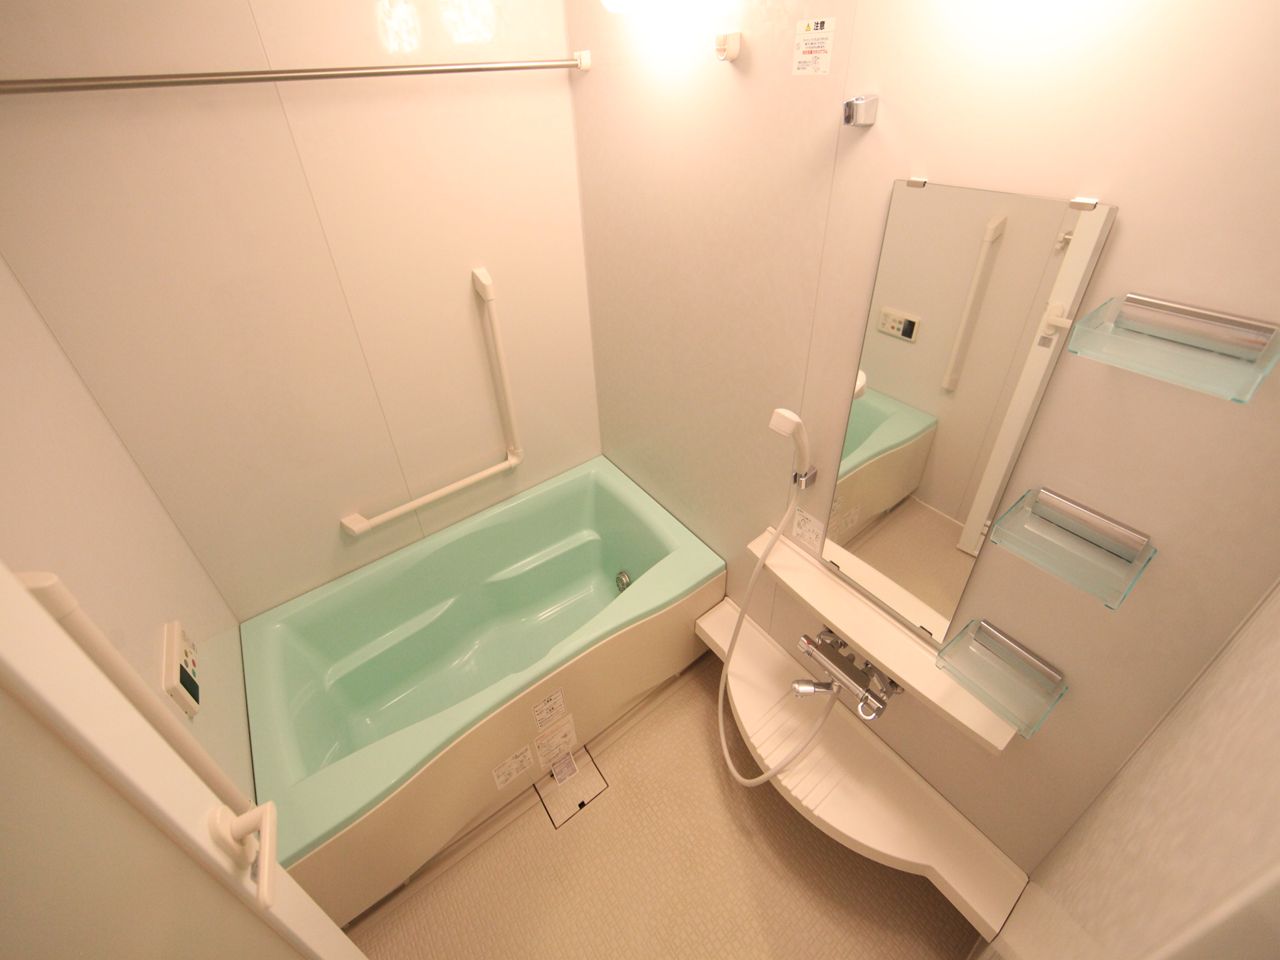 Bath. With reheating Bathroom with heating dryer bath